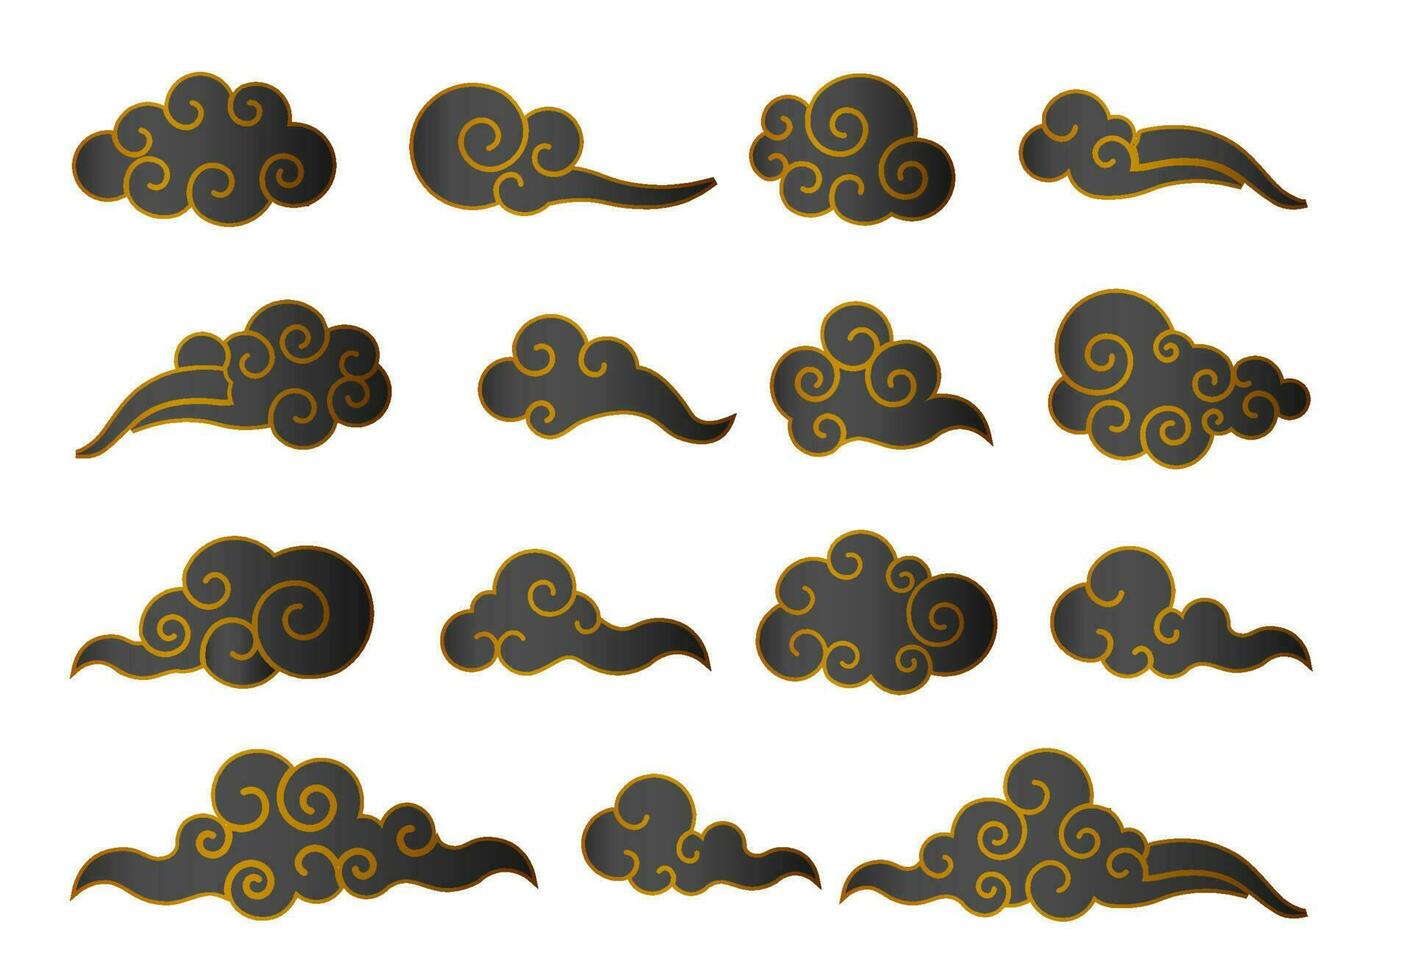 moln i kinesisk stil. abstrakt svart och guld molnig uppsättning isolerat på vit bakgrund. vektor illustration